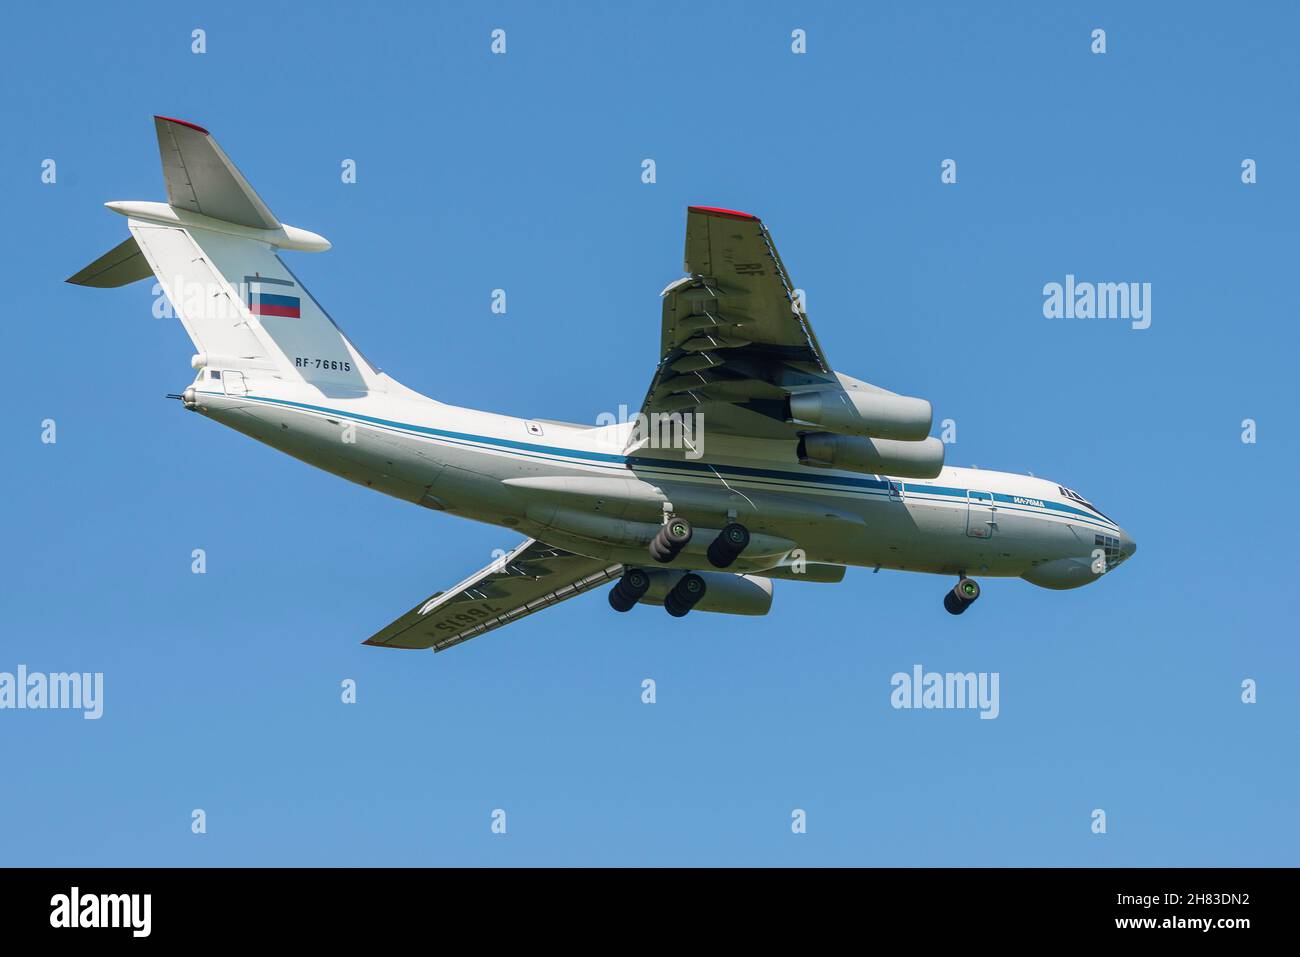 SANKT PETERSBURG, RUSSLAND - 29. MAI 2021: IL-76MD (RF-76615) schweres Militärtransportflugzeug auf dem Gleitschirmweg. Nahaufnahme Stockfoto